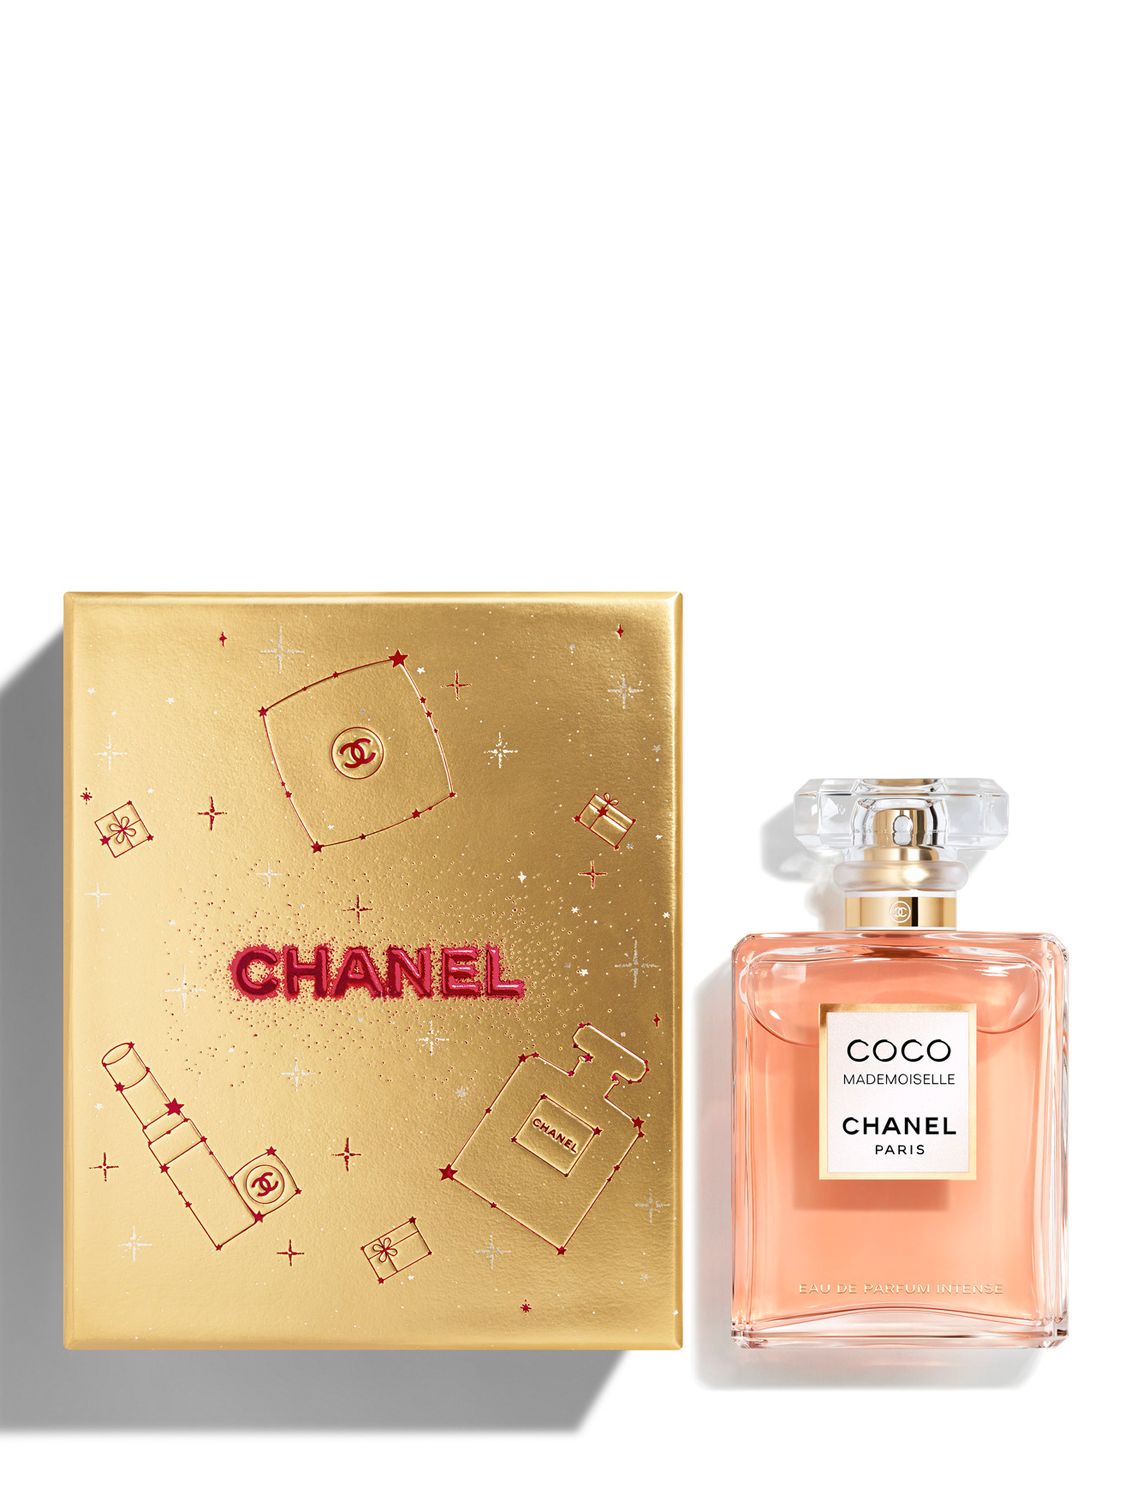 CHANEL (COCO MADEMOISELLE) Eau de Parfum (35ml) | Harrods US